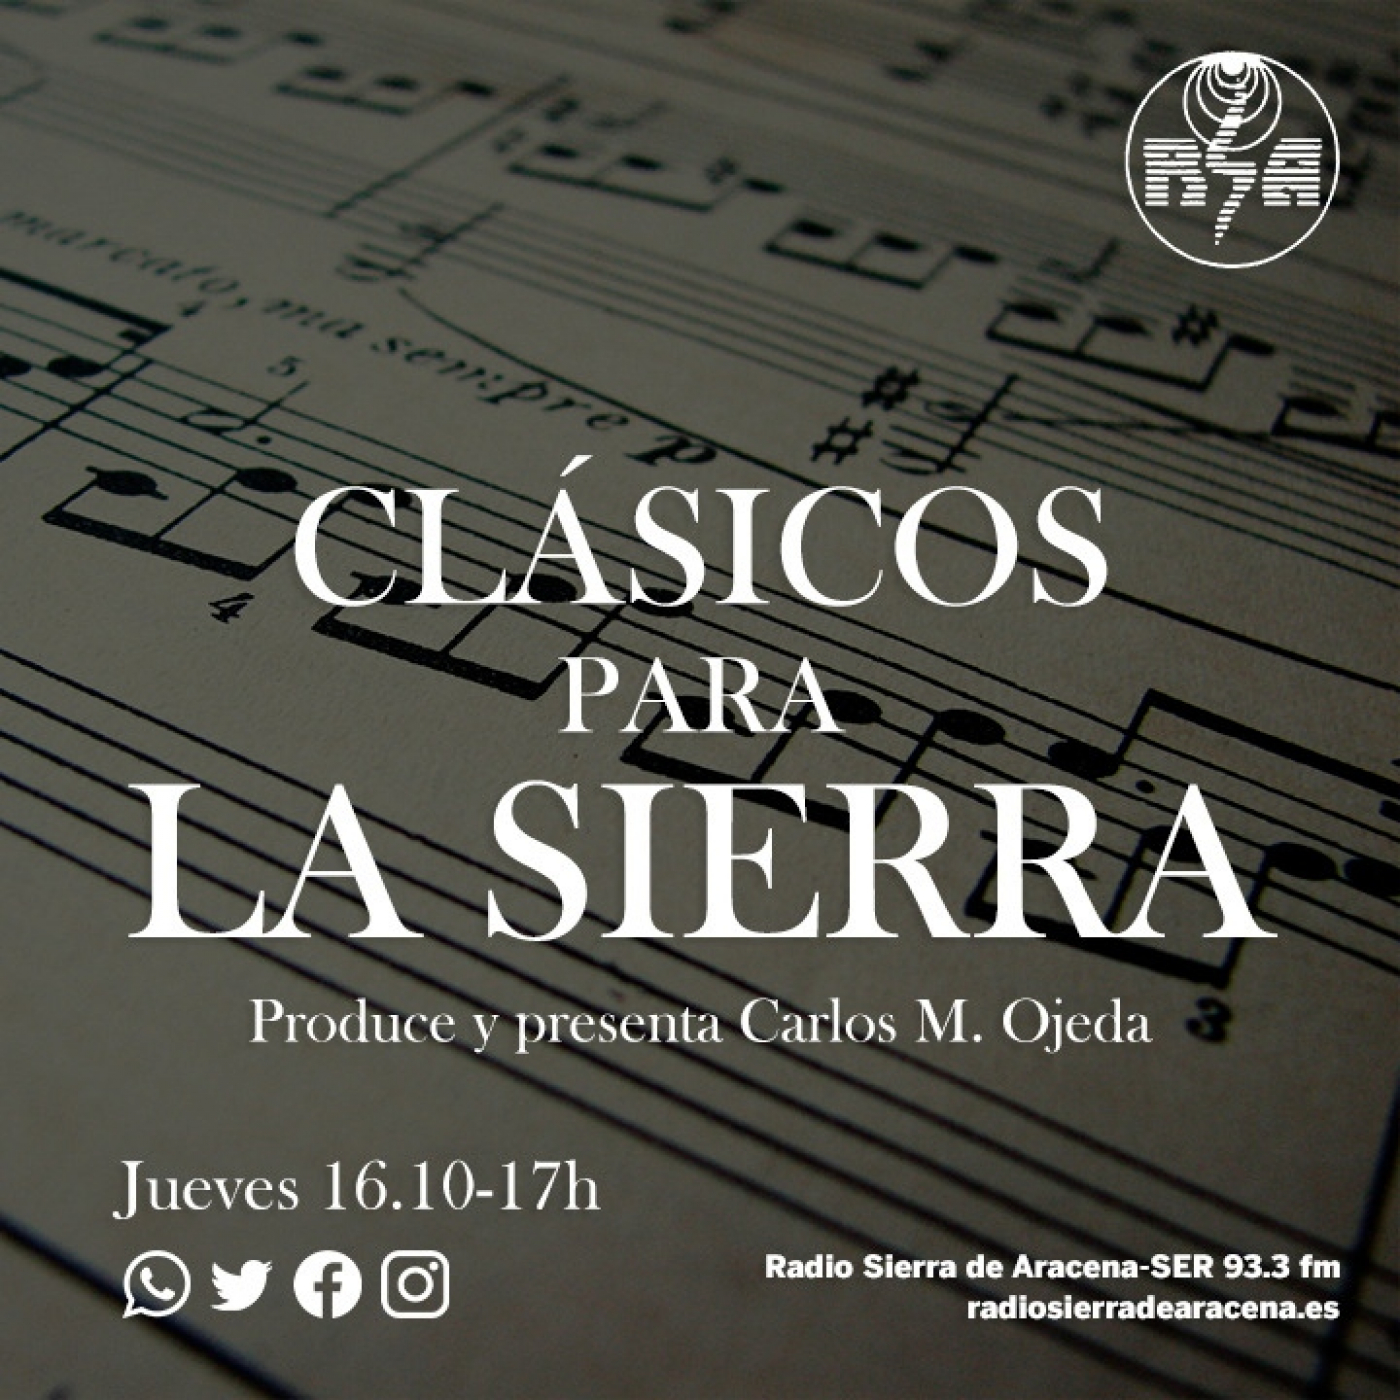 J 22/2/24 - CLÁSICOS PARA LA SIERRA - “Mujeres compositoras. Beach, Tailleferre y F. Mendelssohn”